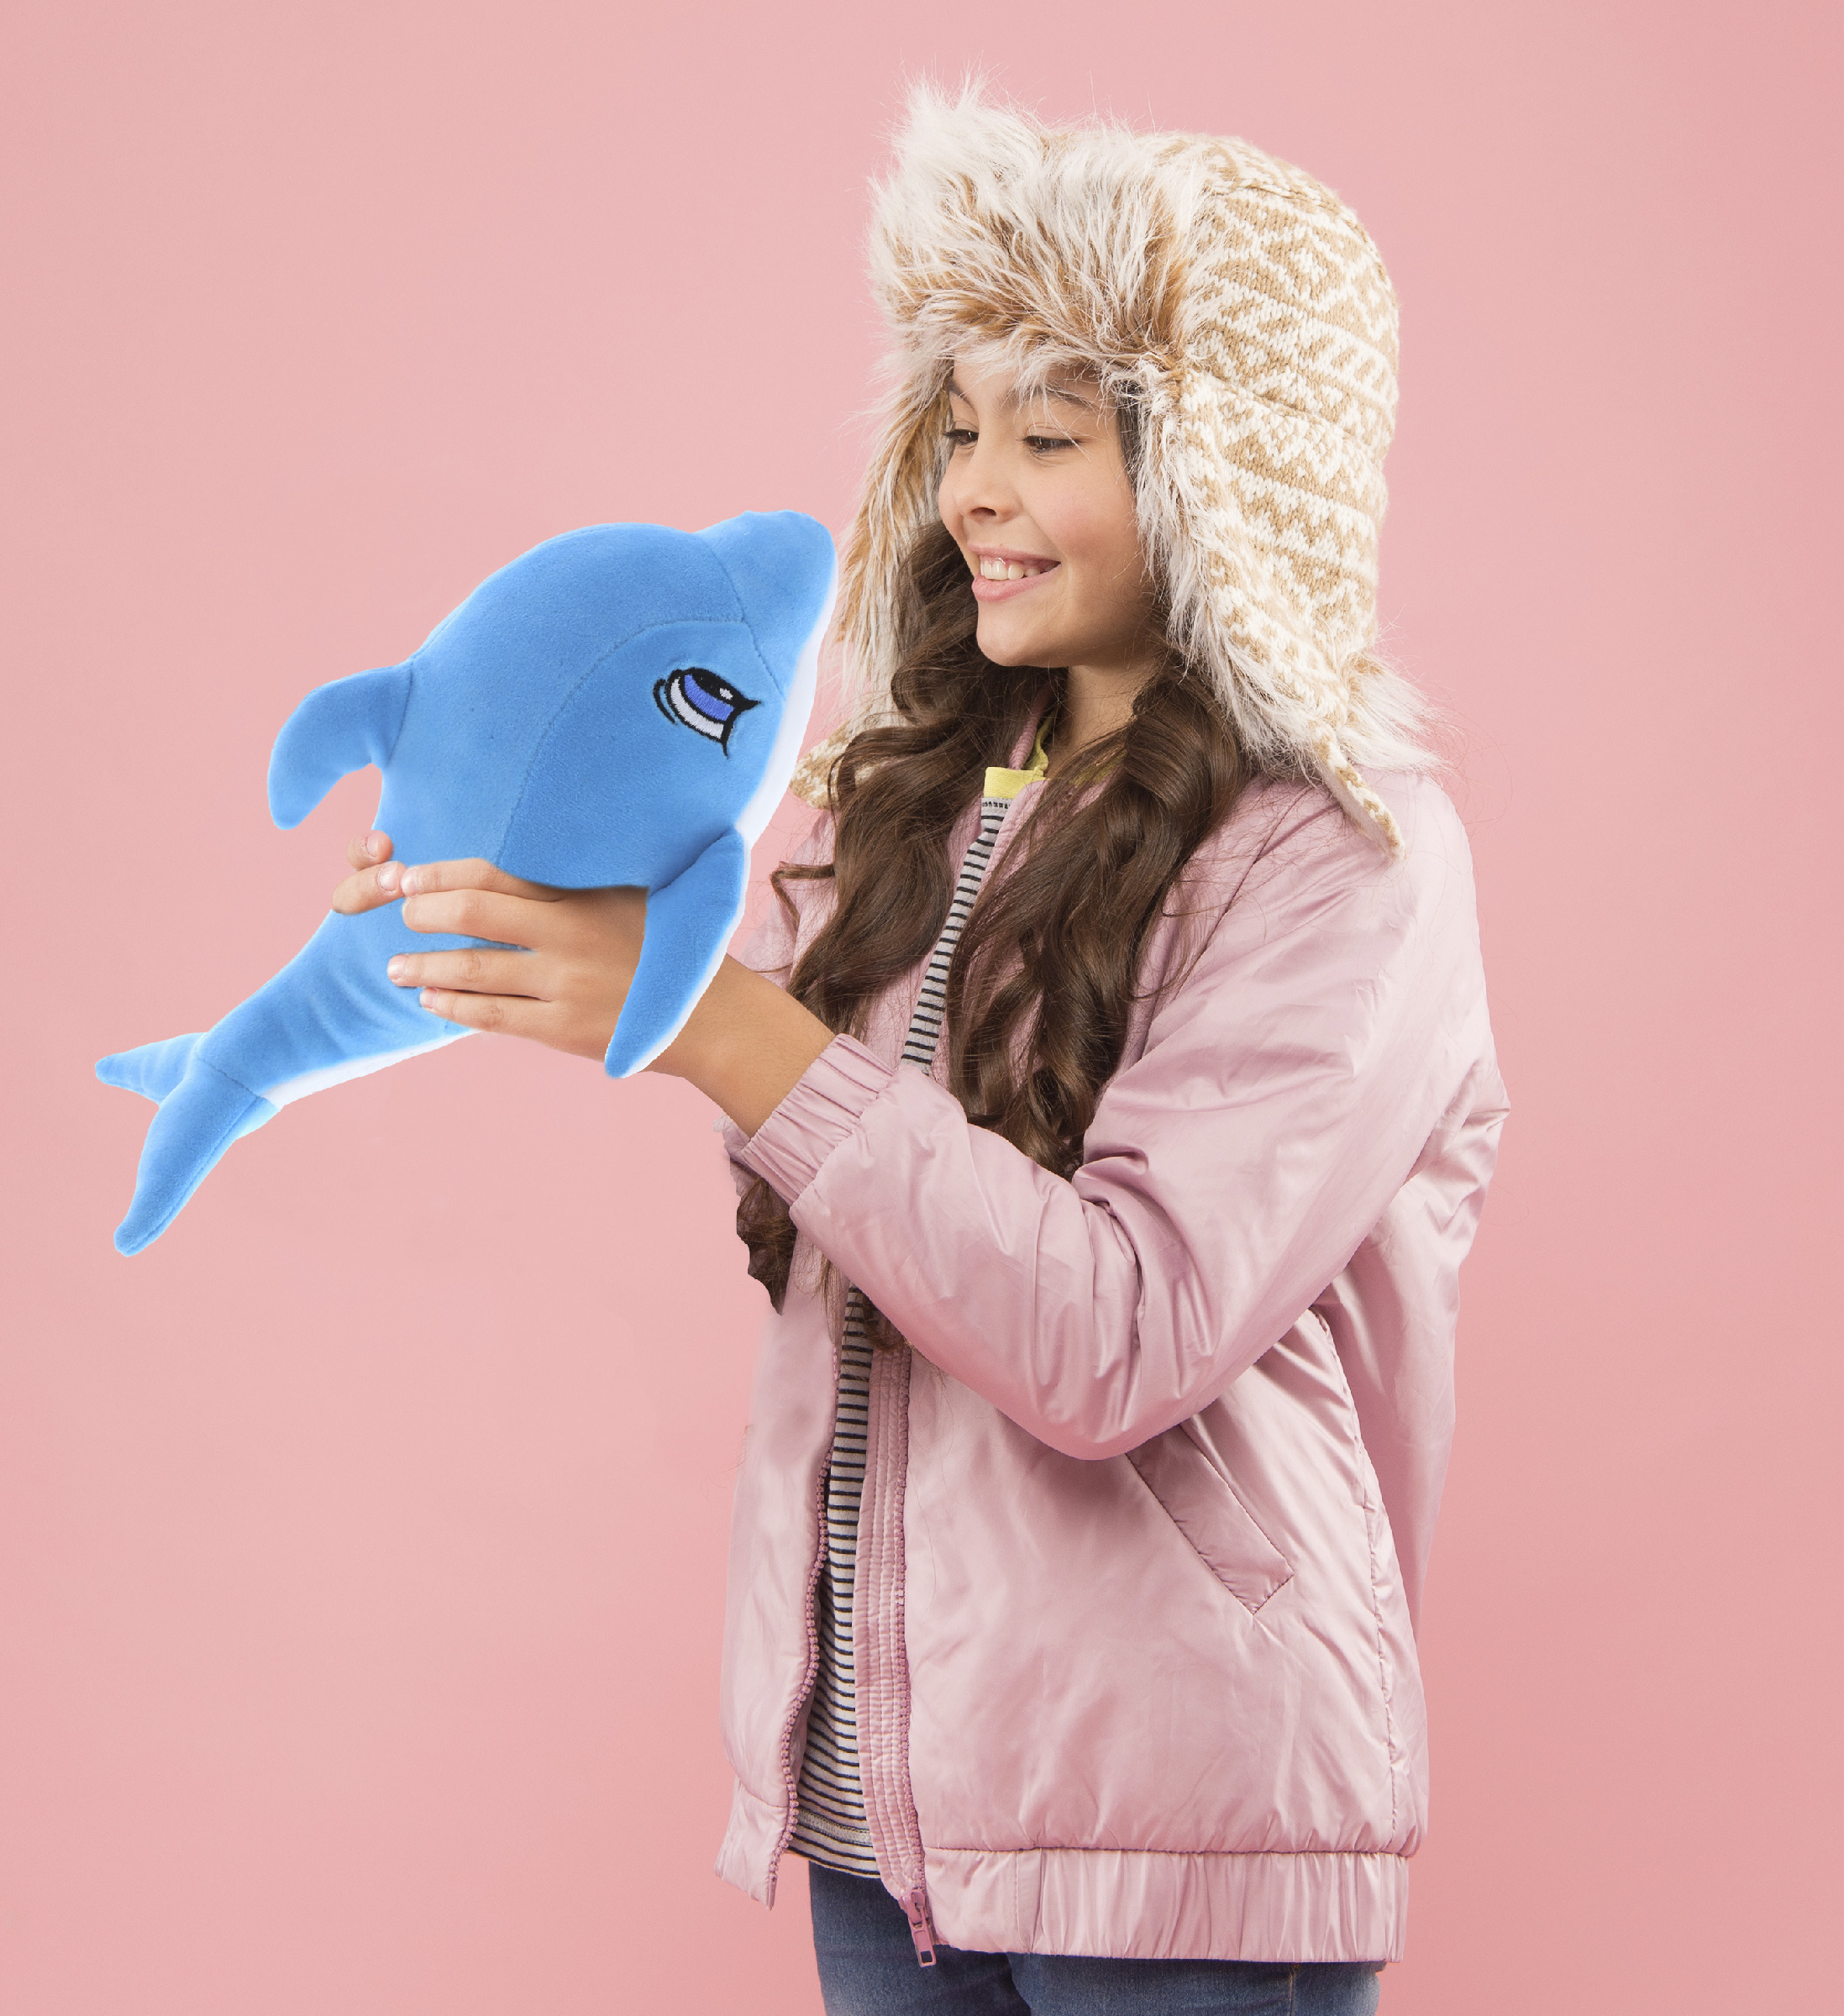 Dolphin – Super Soft Plush Trolley & Purse - DolliBu